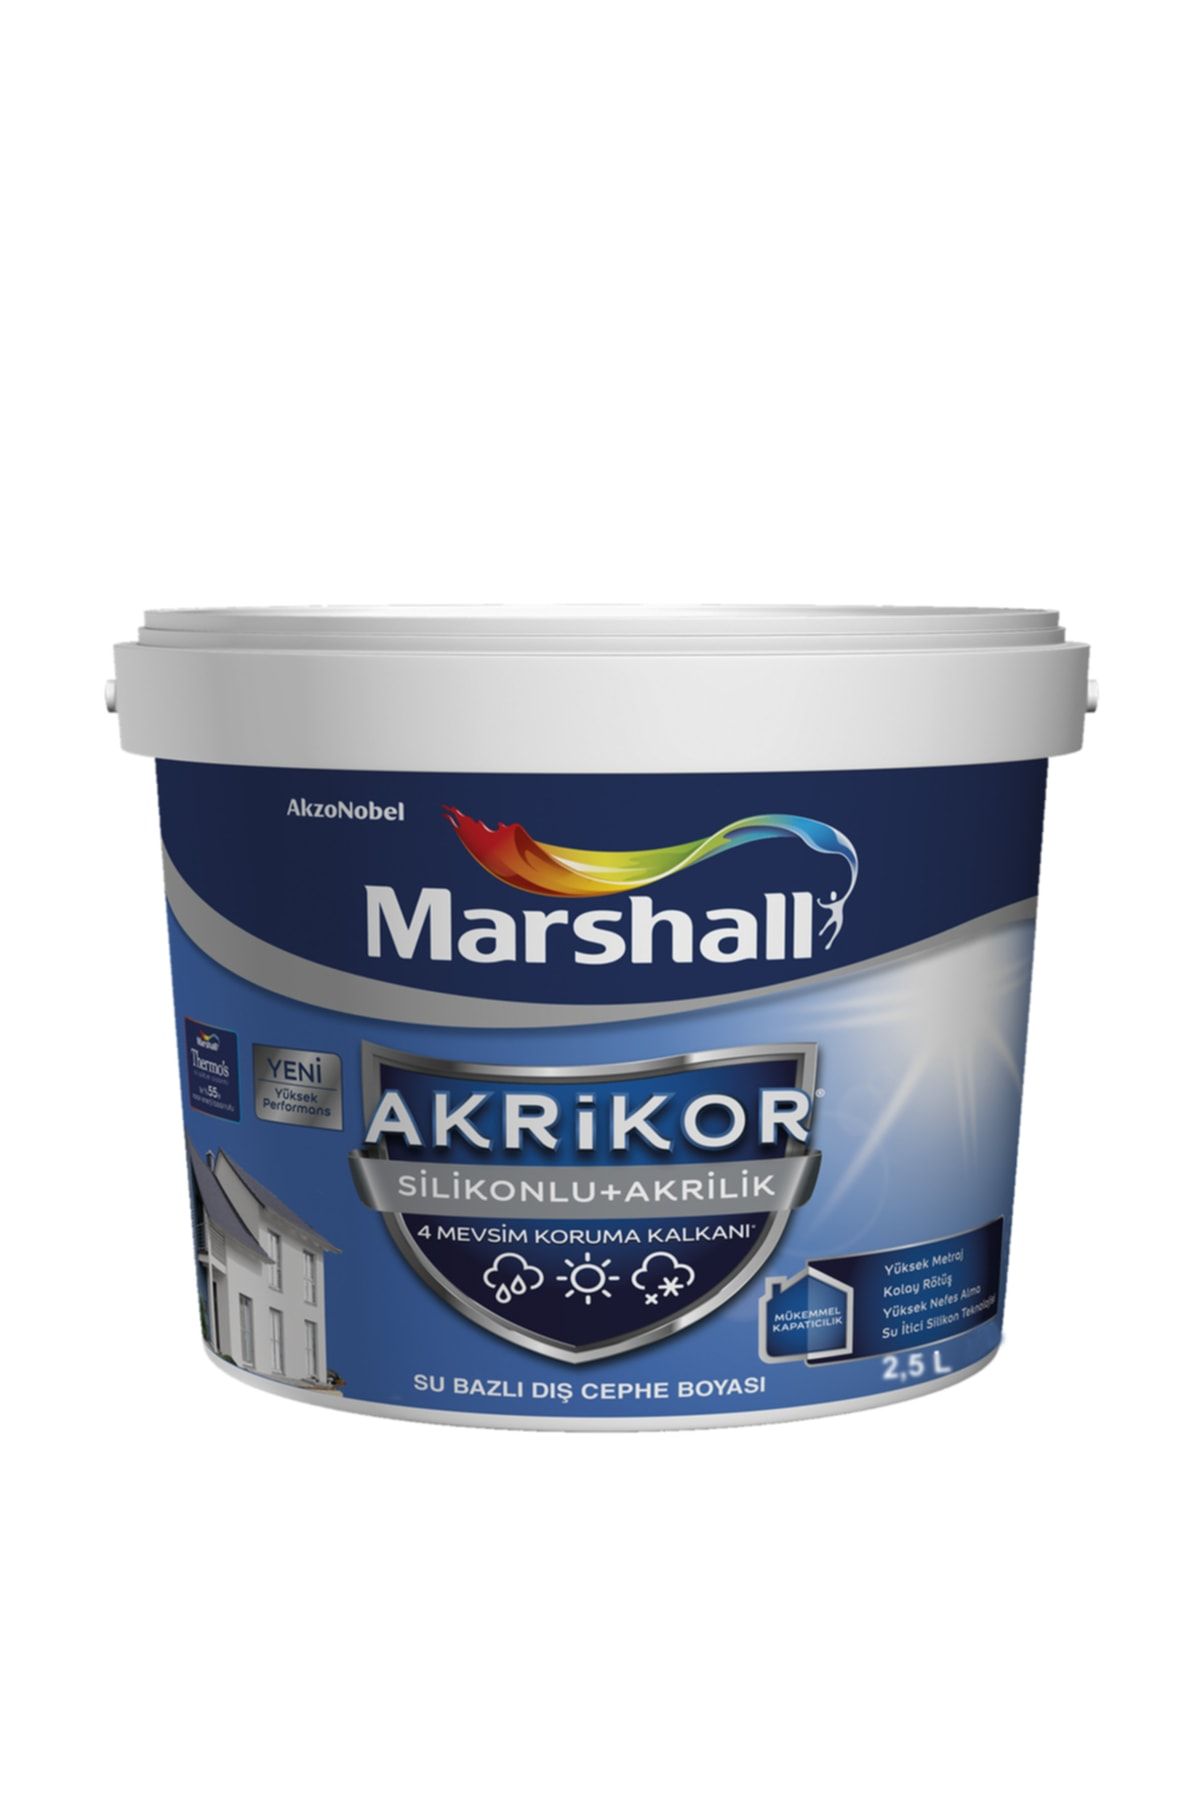 Marshall Akrikor Silikonlu + Akrilik Boya S3 2,5 Lt. (3,5 Kg)